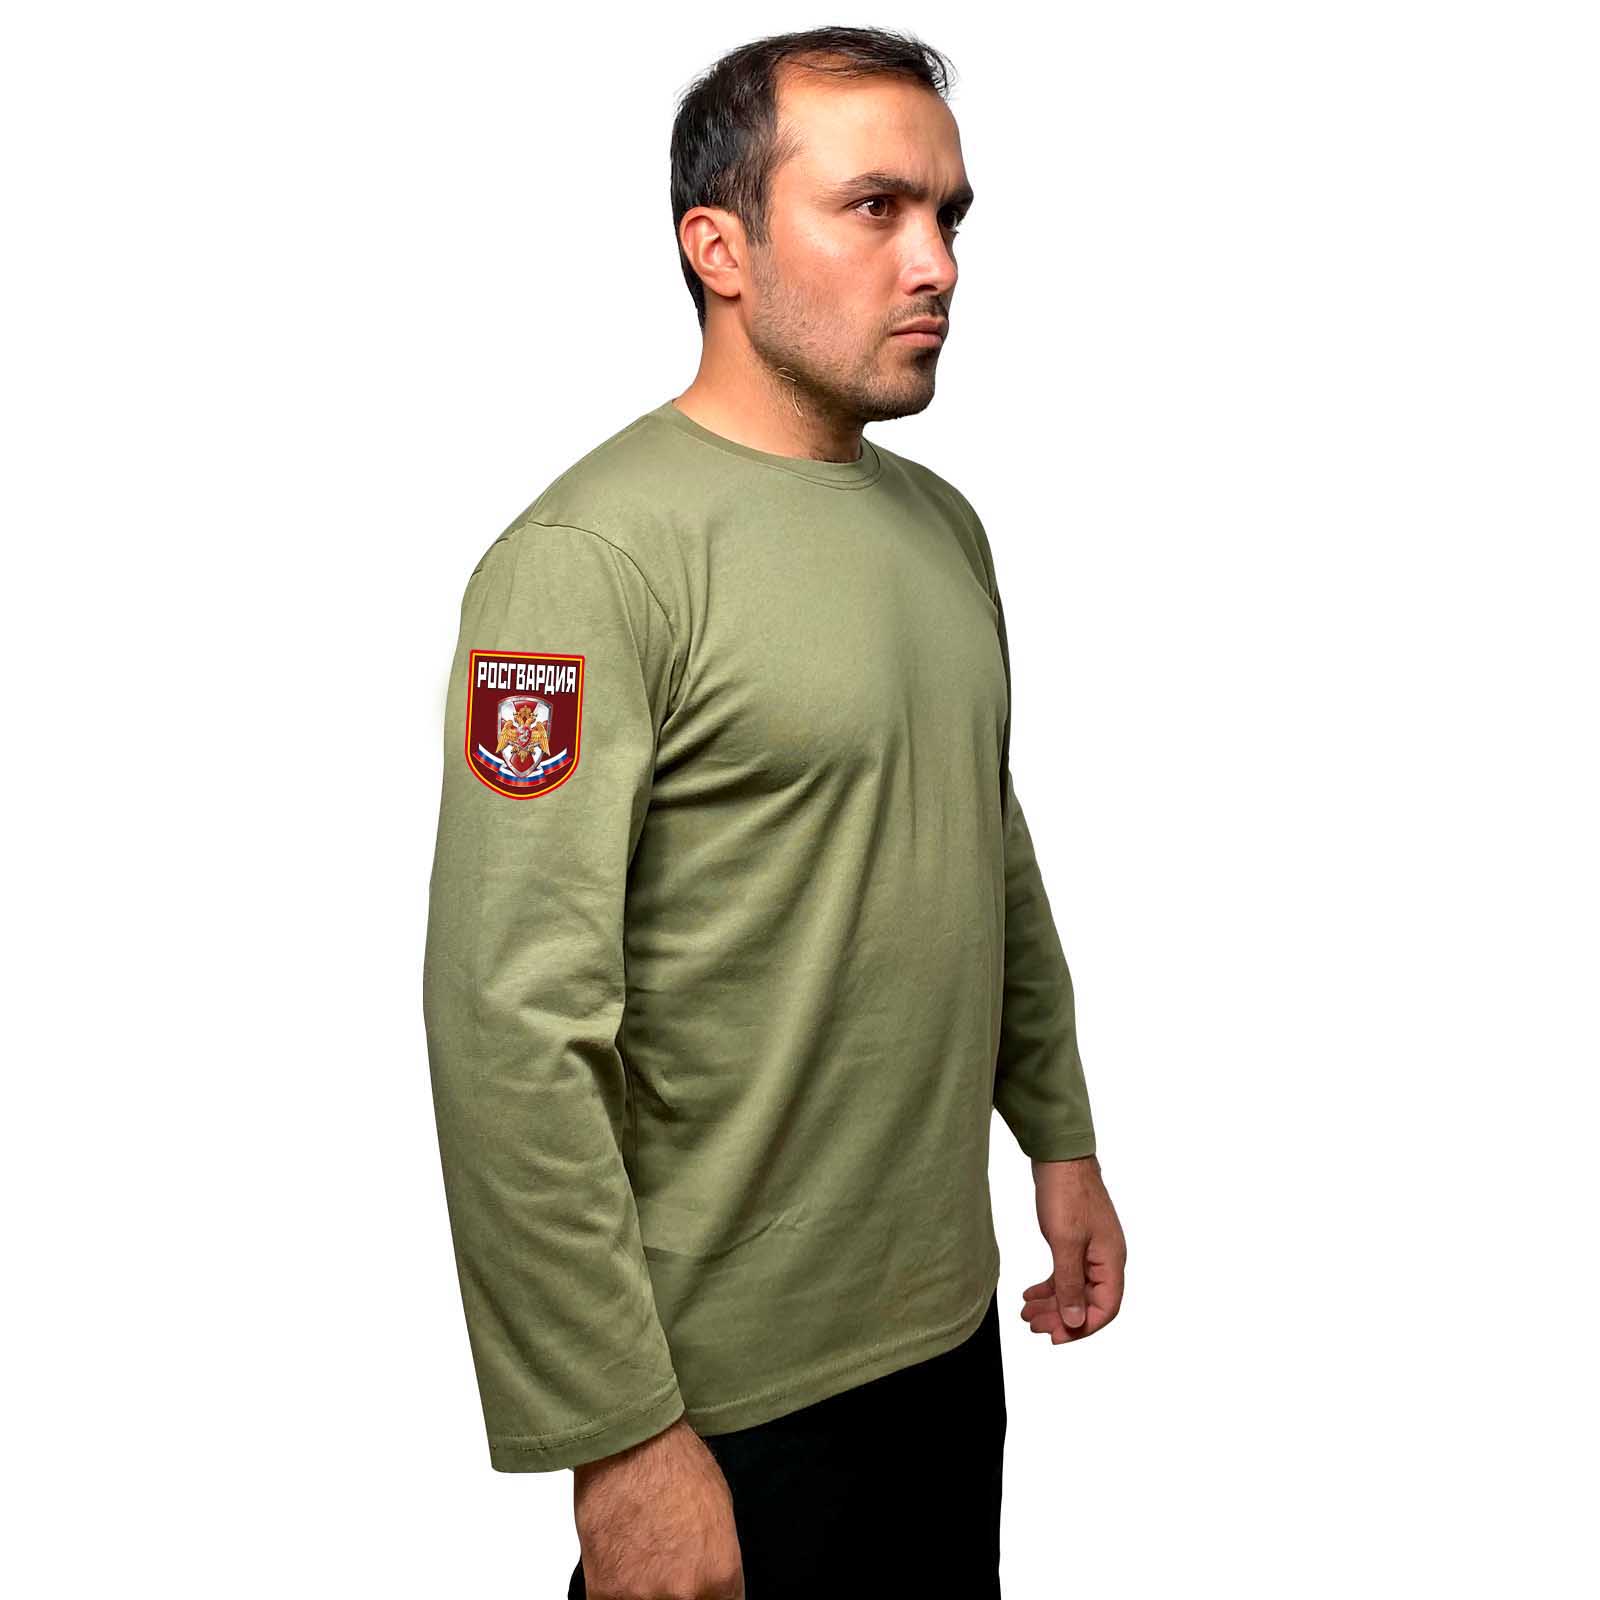 Купить футболку с длинным рукавом милитари с термотрансфером Росгвардия онлайн